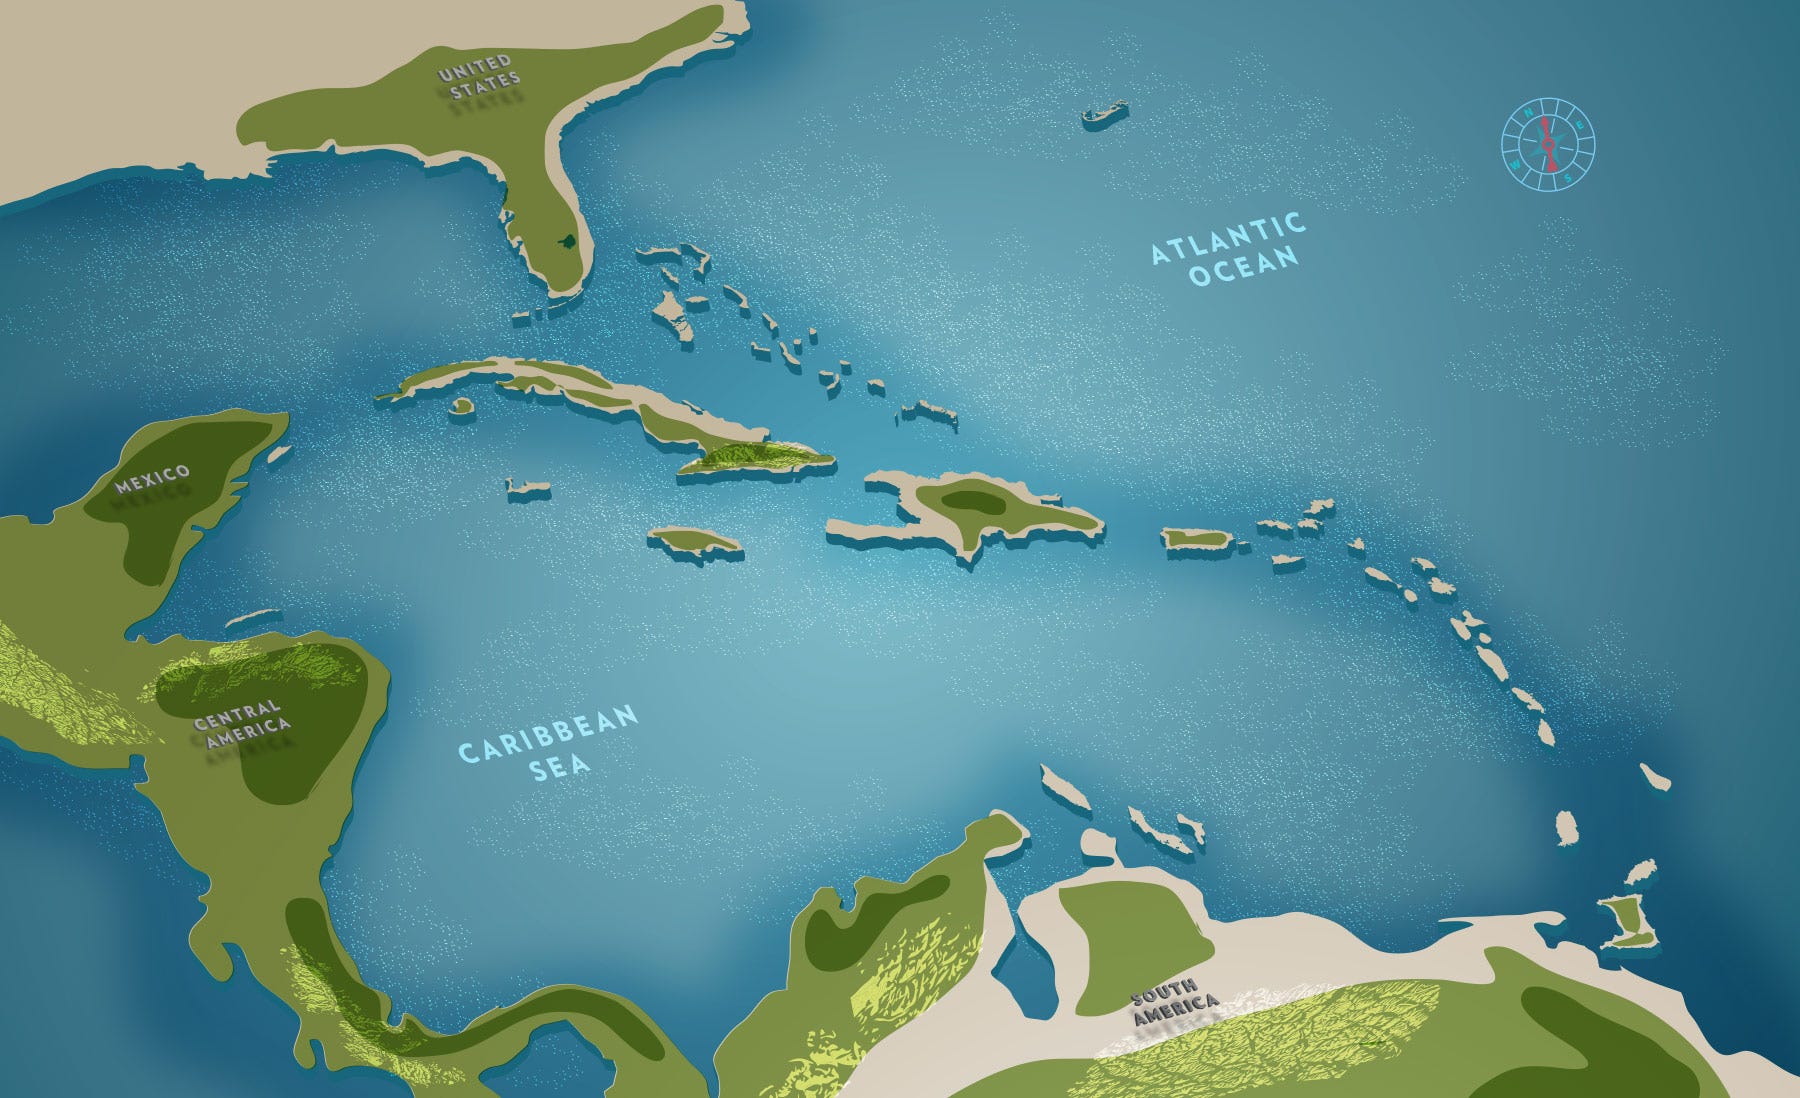 Южная часть архипелага малых антильских островов. Острова Карибского моря на карте. Карибское море Атлантический океан. Карибский бассейн на карте.